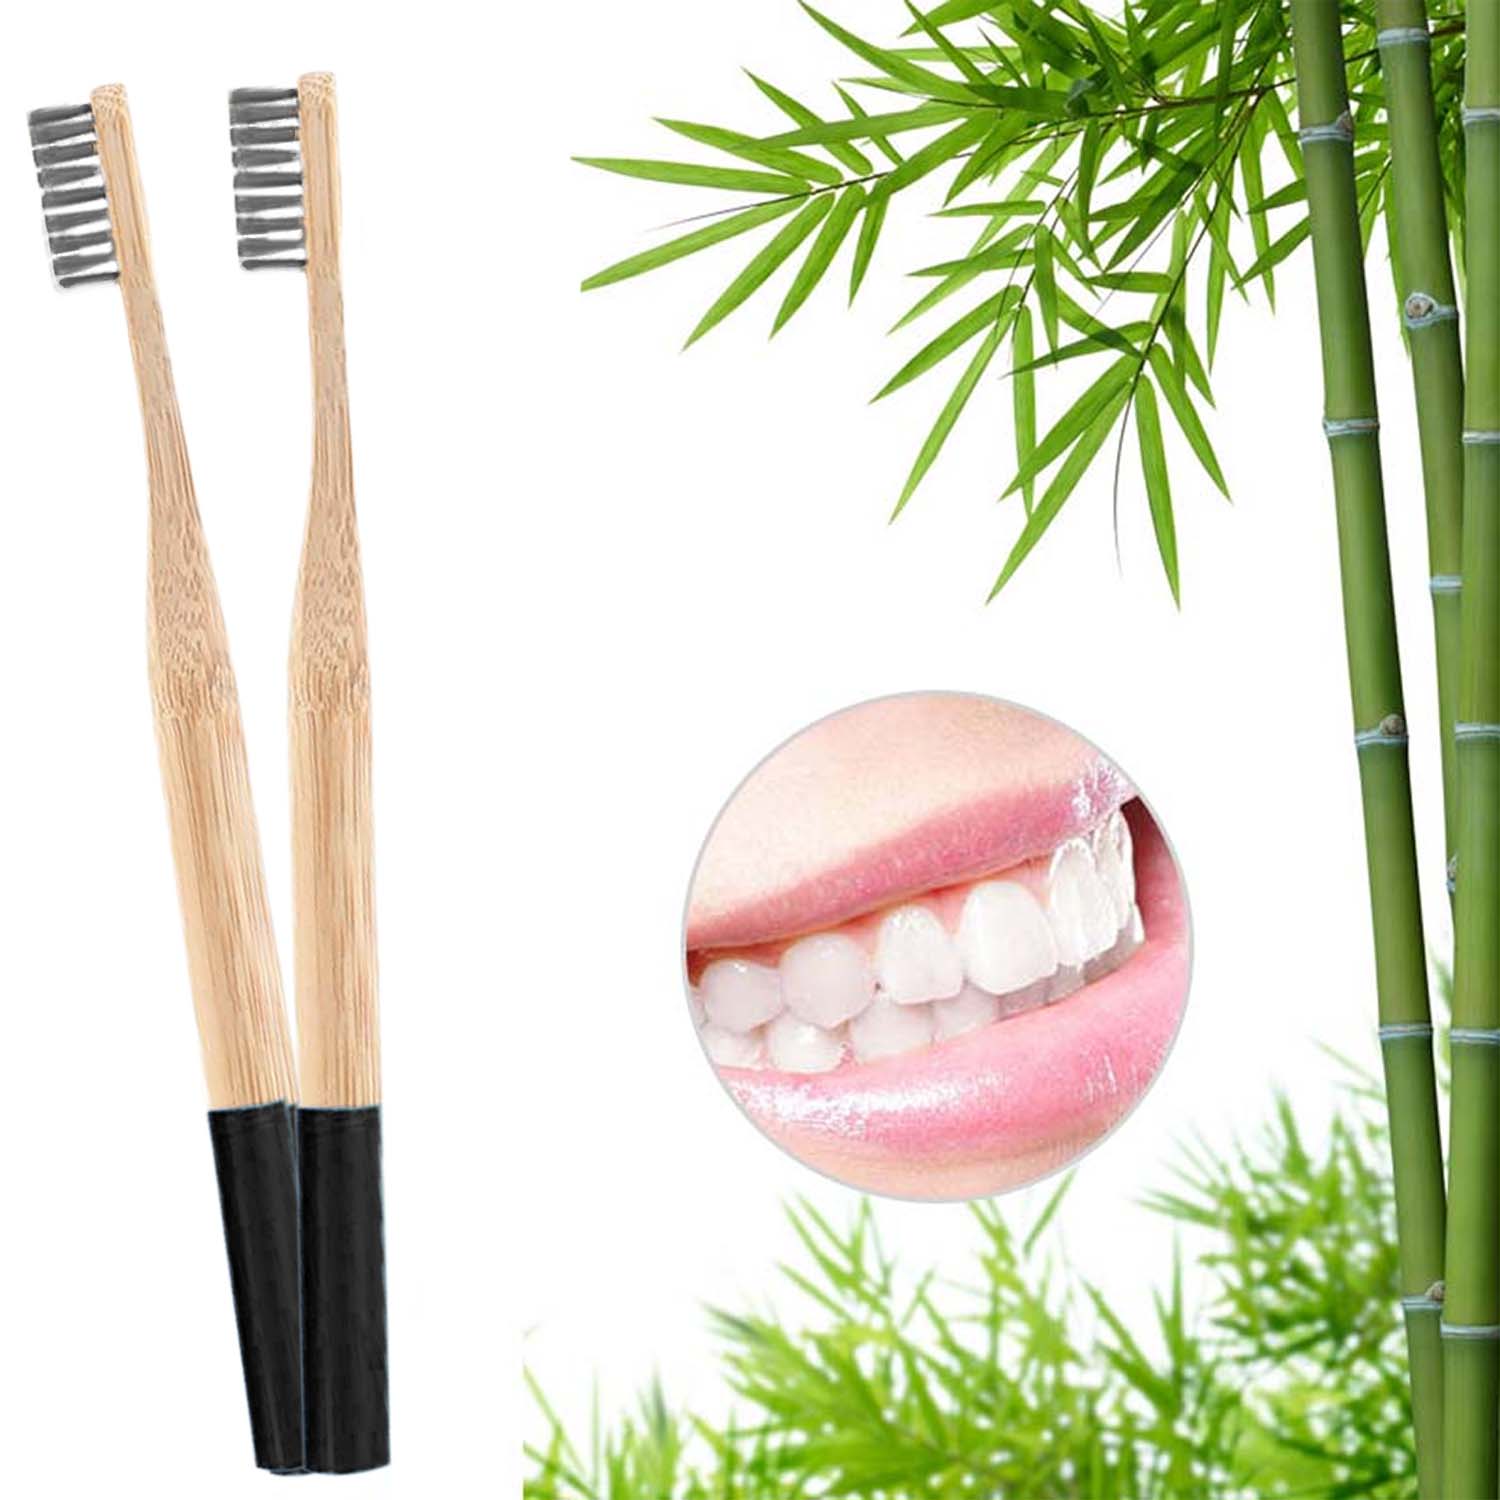 16er Set - Bambus Zahnbürsten - weiße Borsten